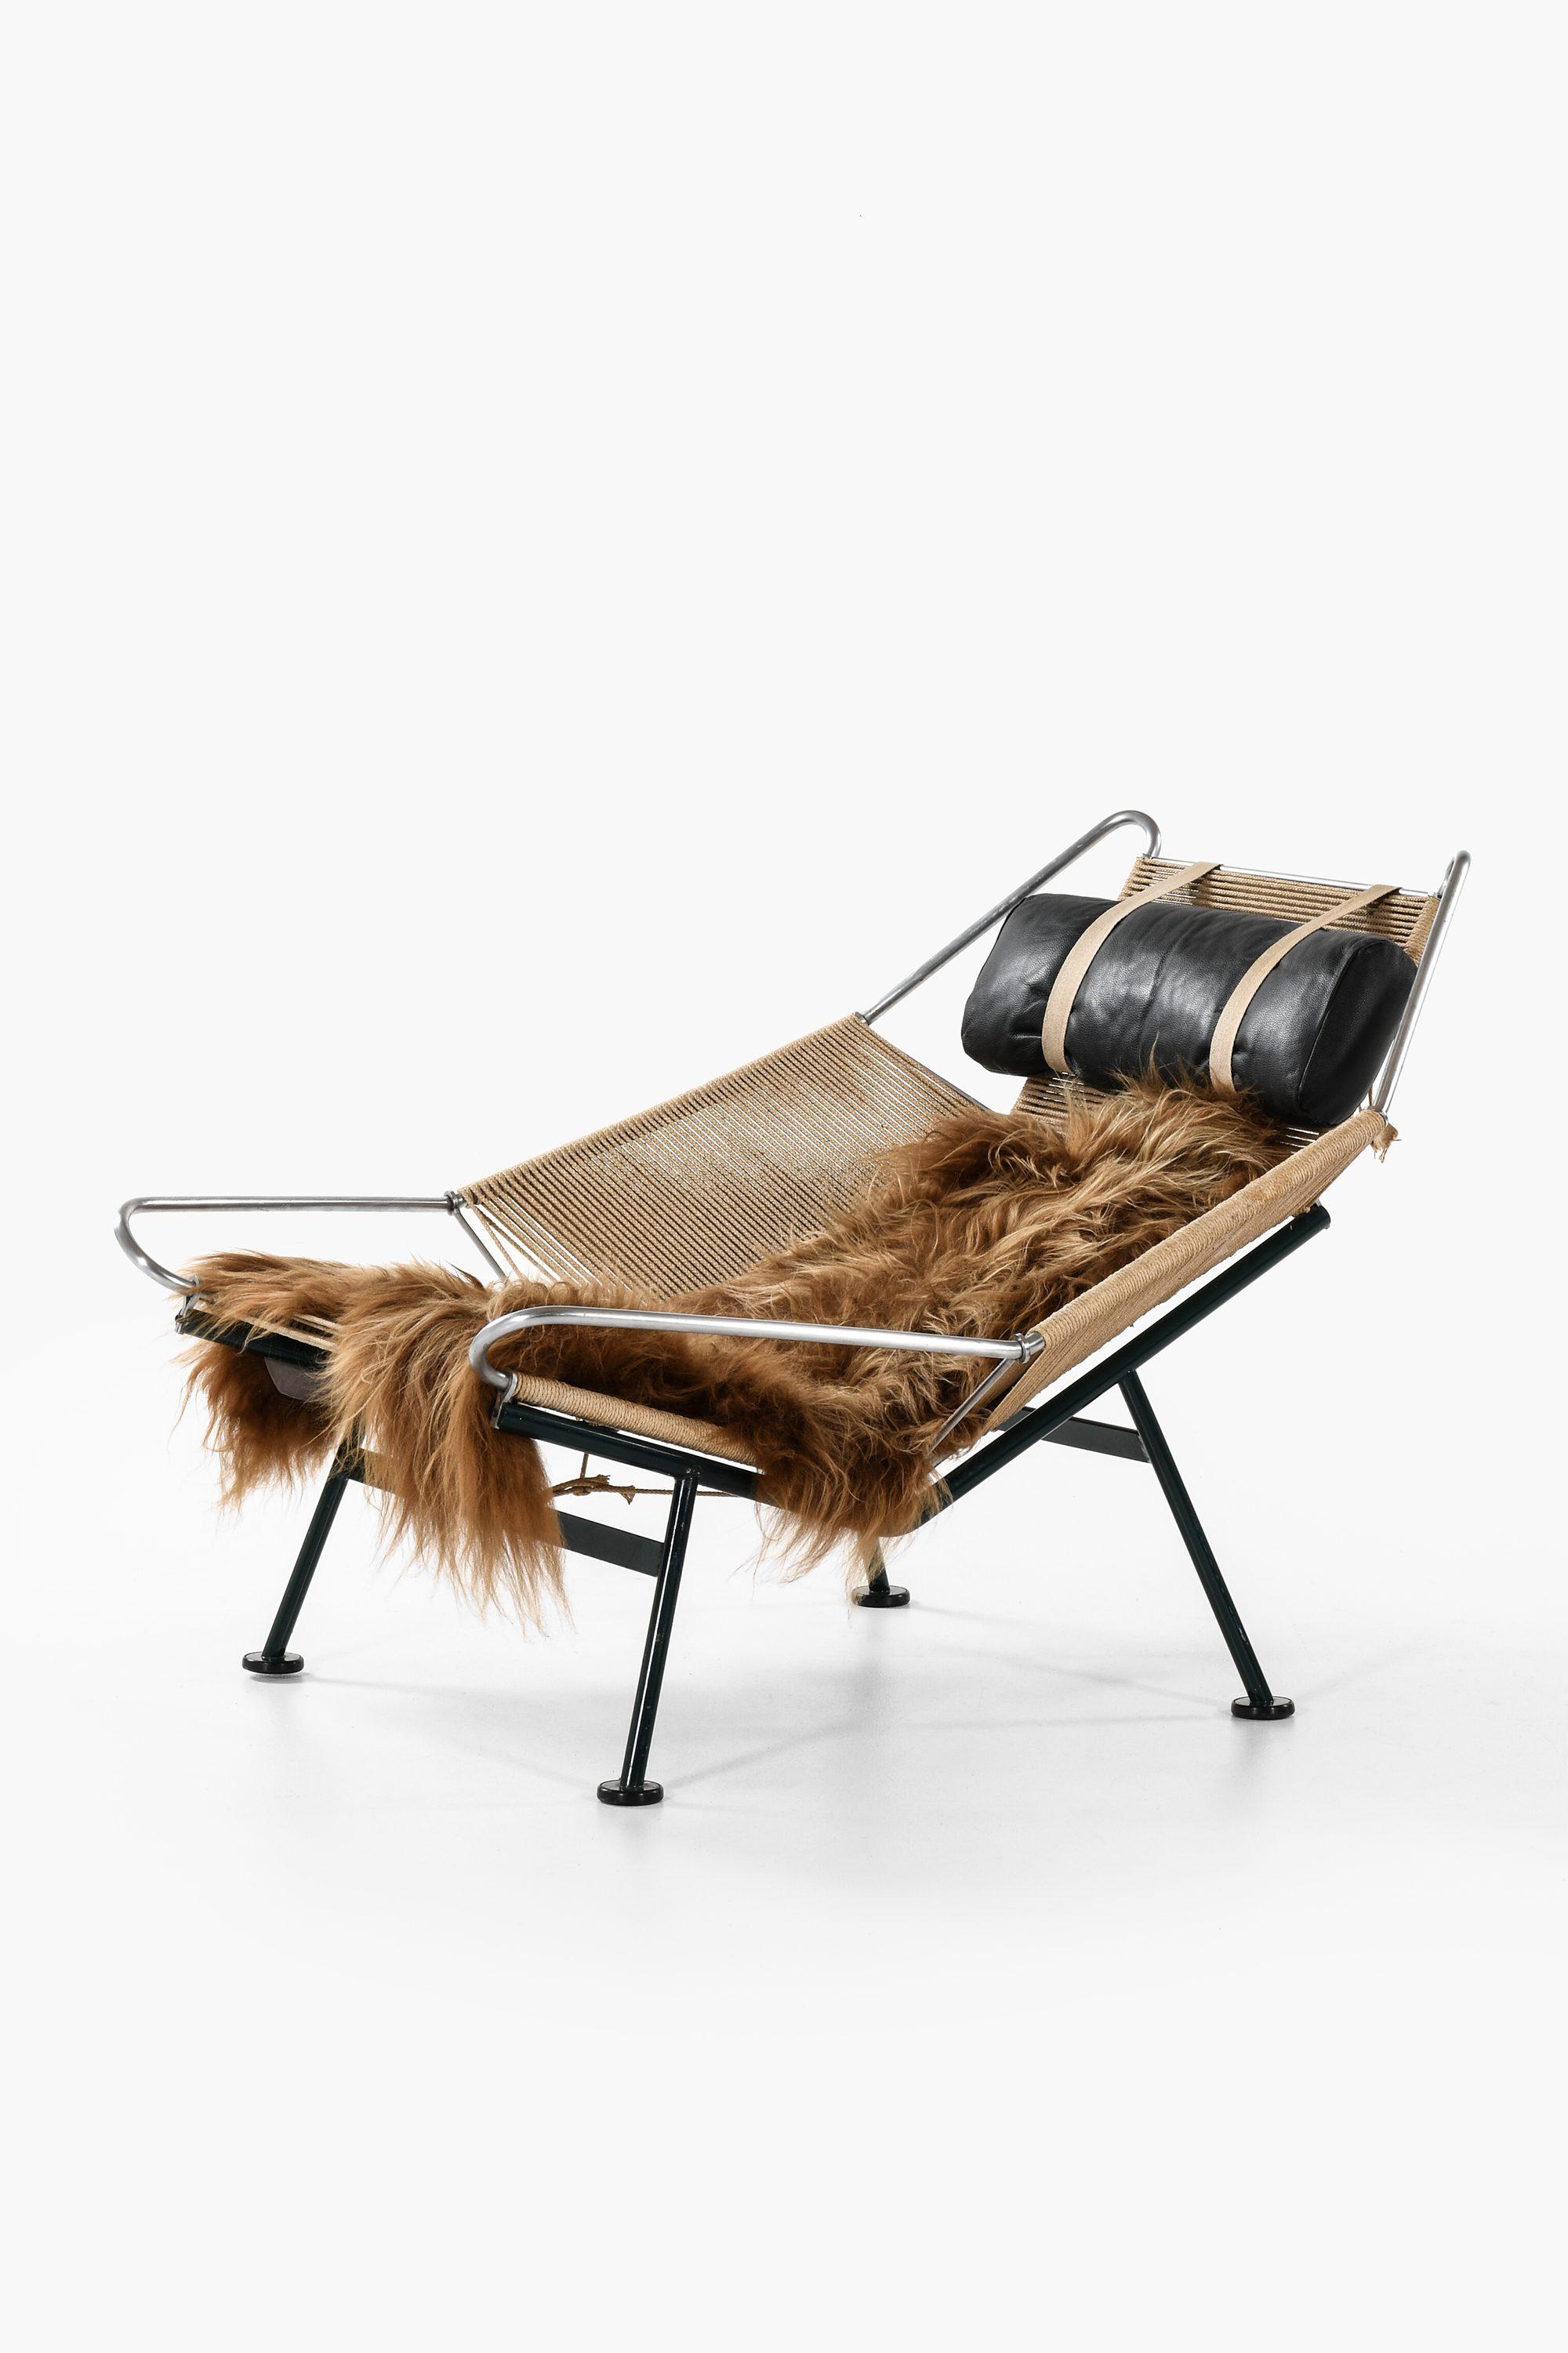 Rare chaise longue / chaise à drisse de drapeau conçue par Hans Wegner
Produit par GETAMA au Danemark
Métal, ligne de drapeau, peau de mouton, coussin
1960s
Bon état vintage, avec des signes d'utilisation
milieu du siècle,